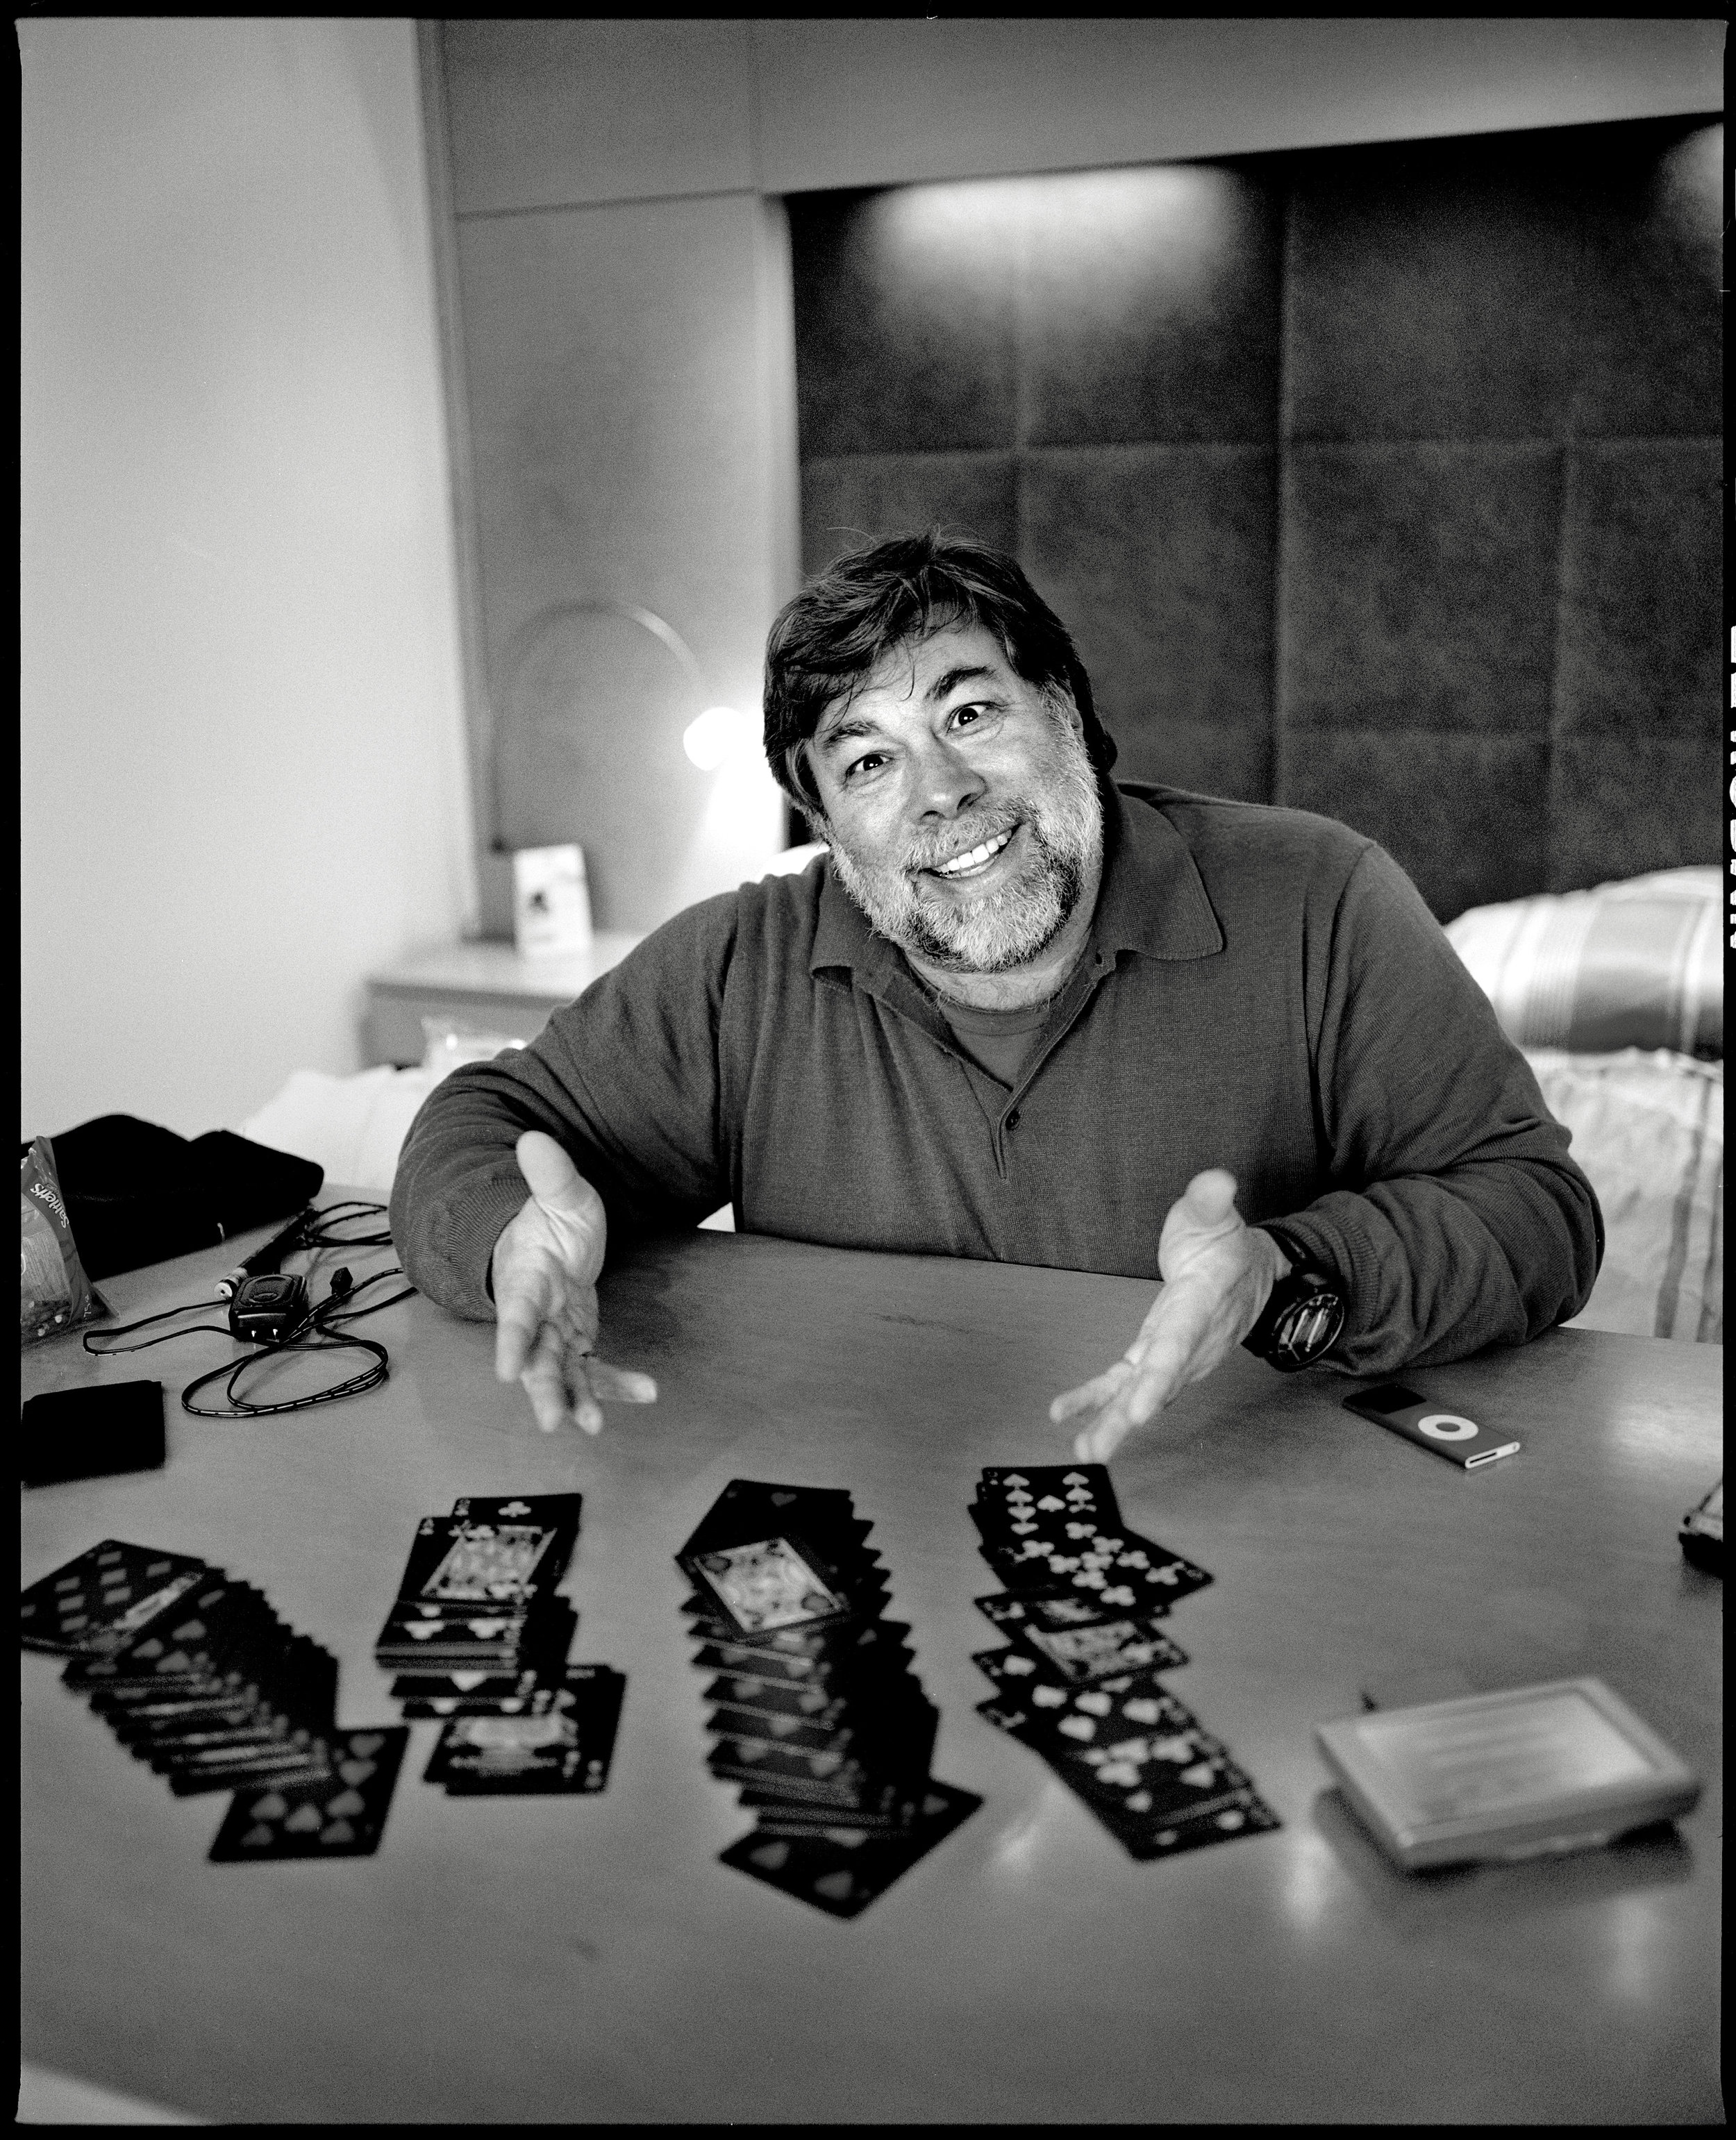 Steve Wozniak - Inventor, Co-Founder of Apple Inc.